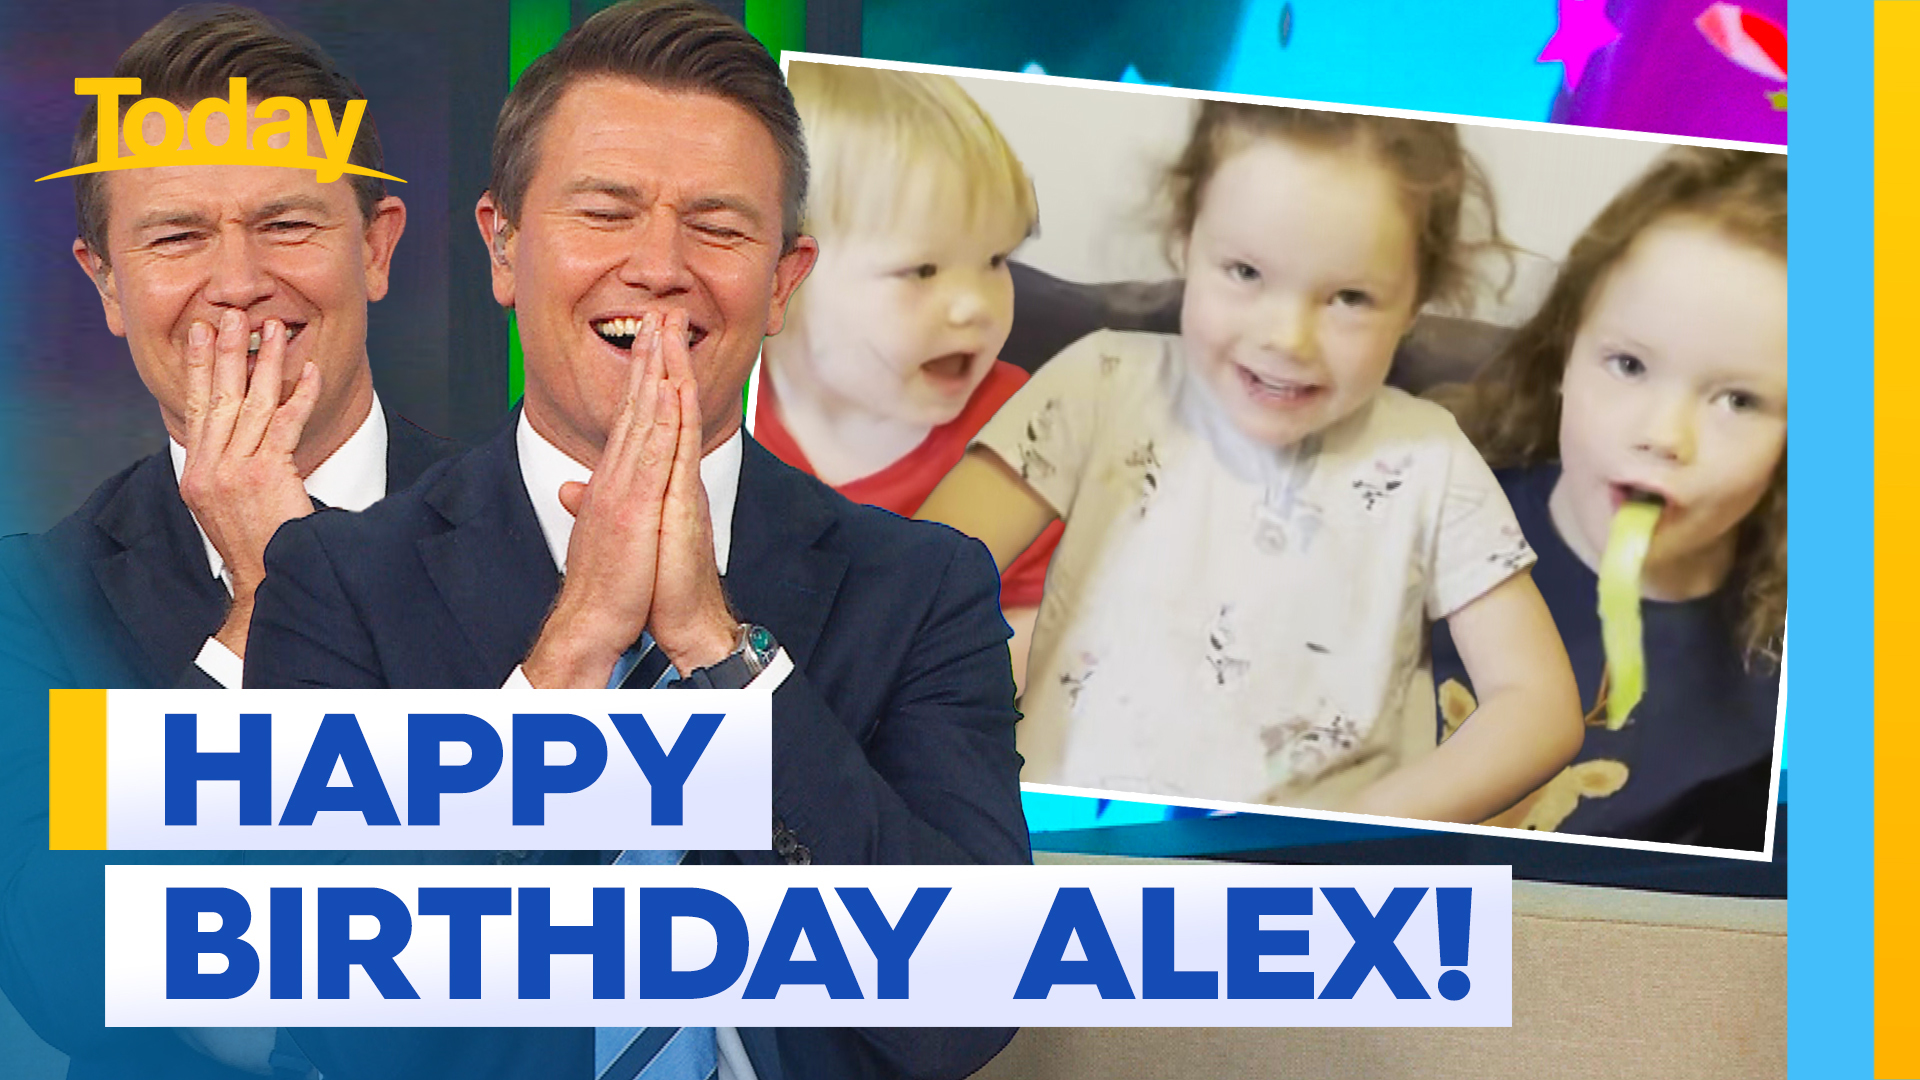 Alex Cullen's kids send sweet birthday video message